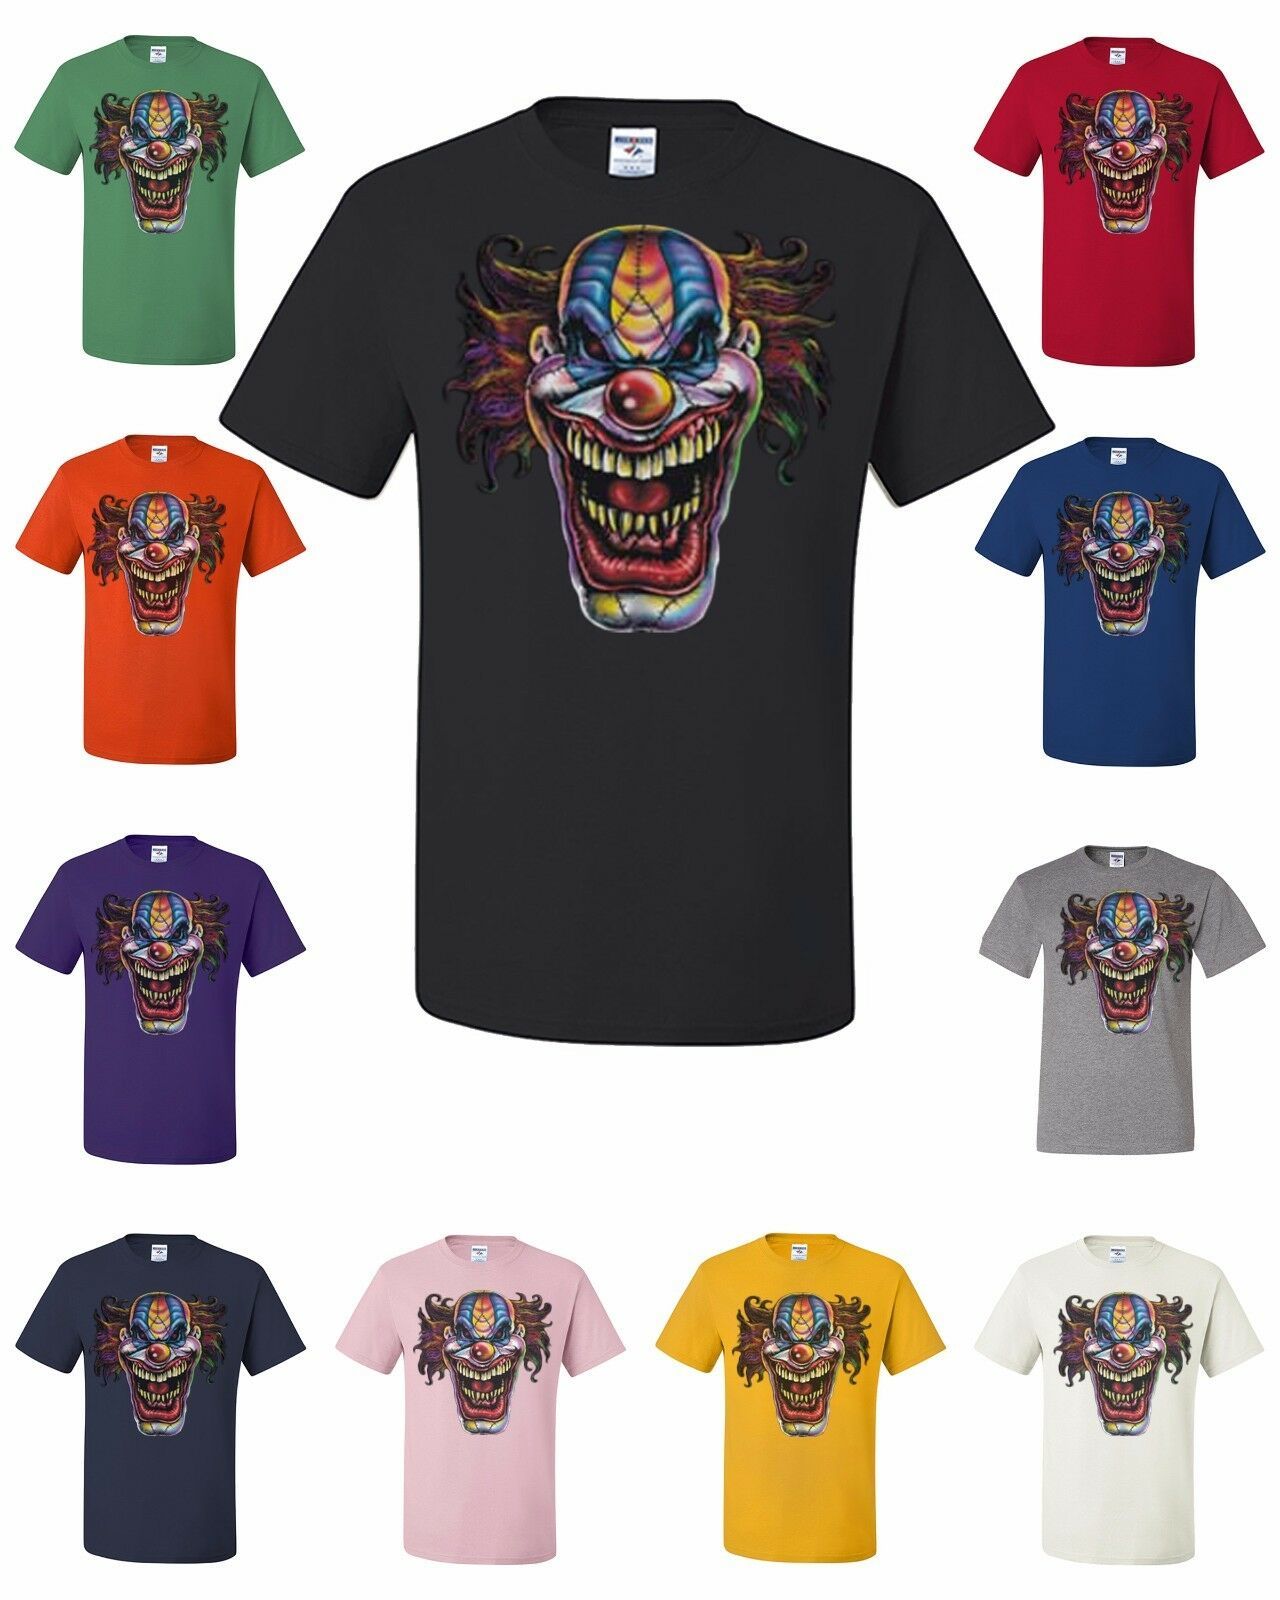 Evil Mad Clown Face T-Shirt Scary Horror Crazy Insane Joker Tee Shirt Halloween